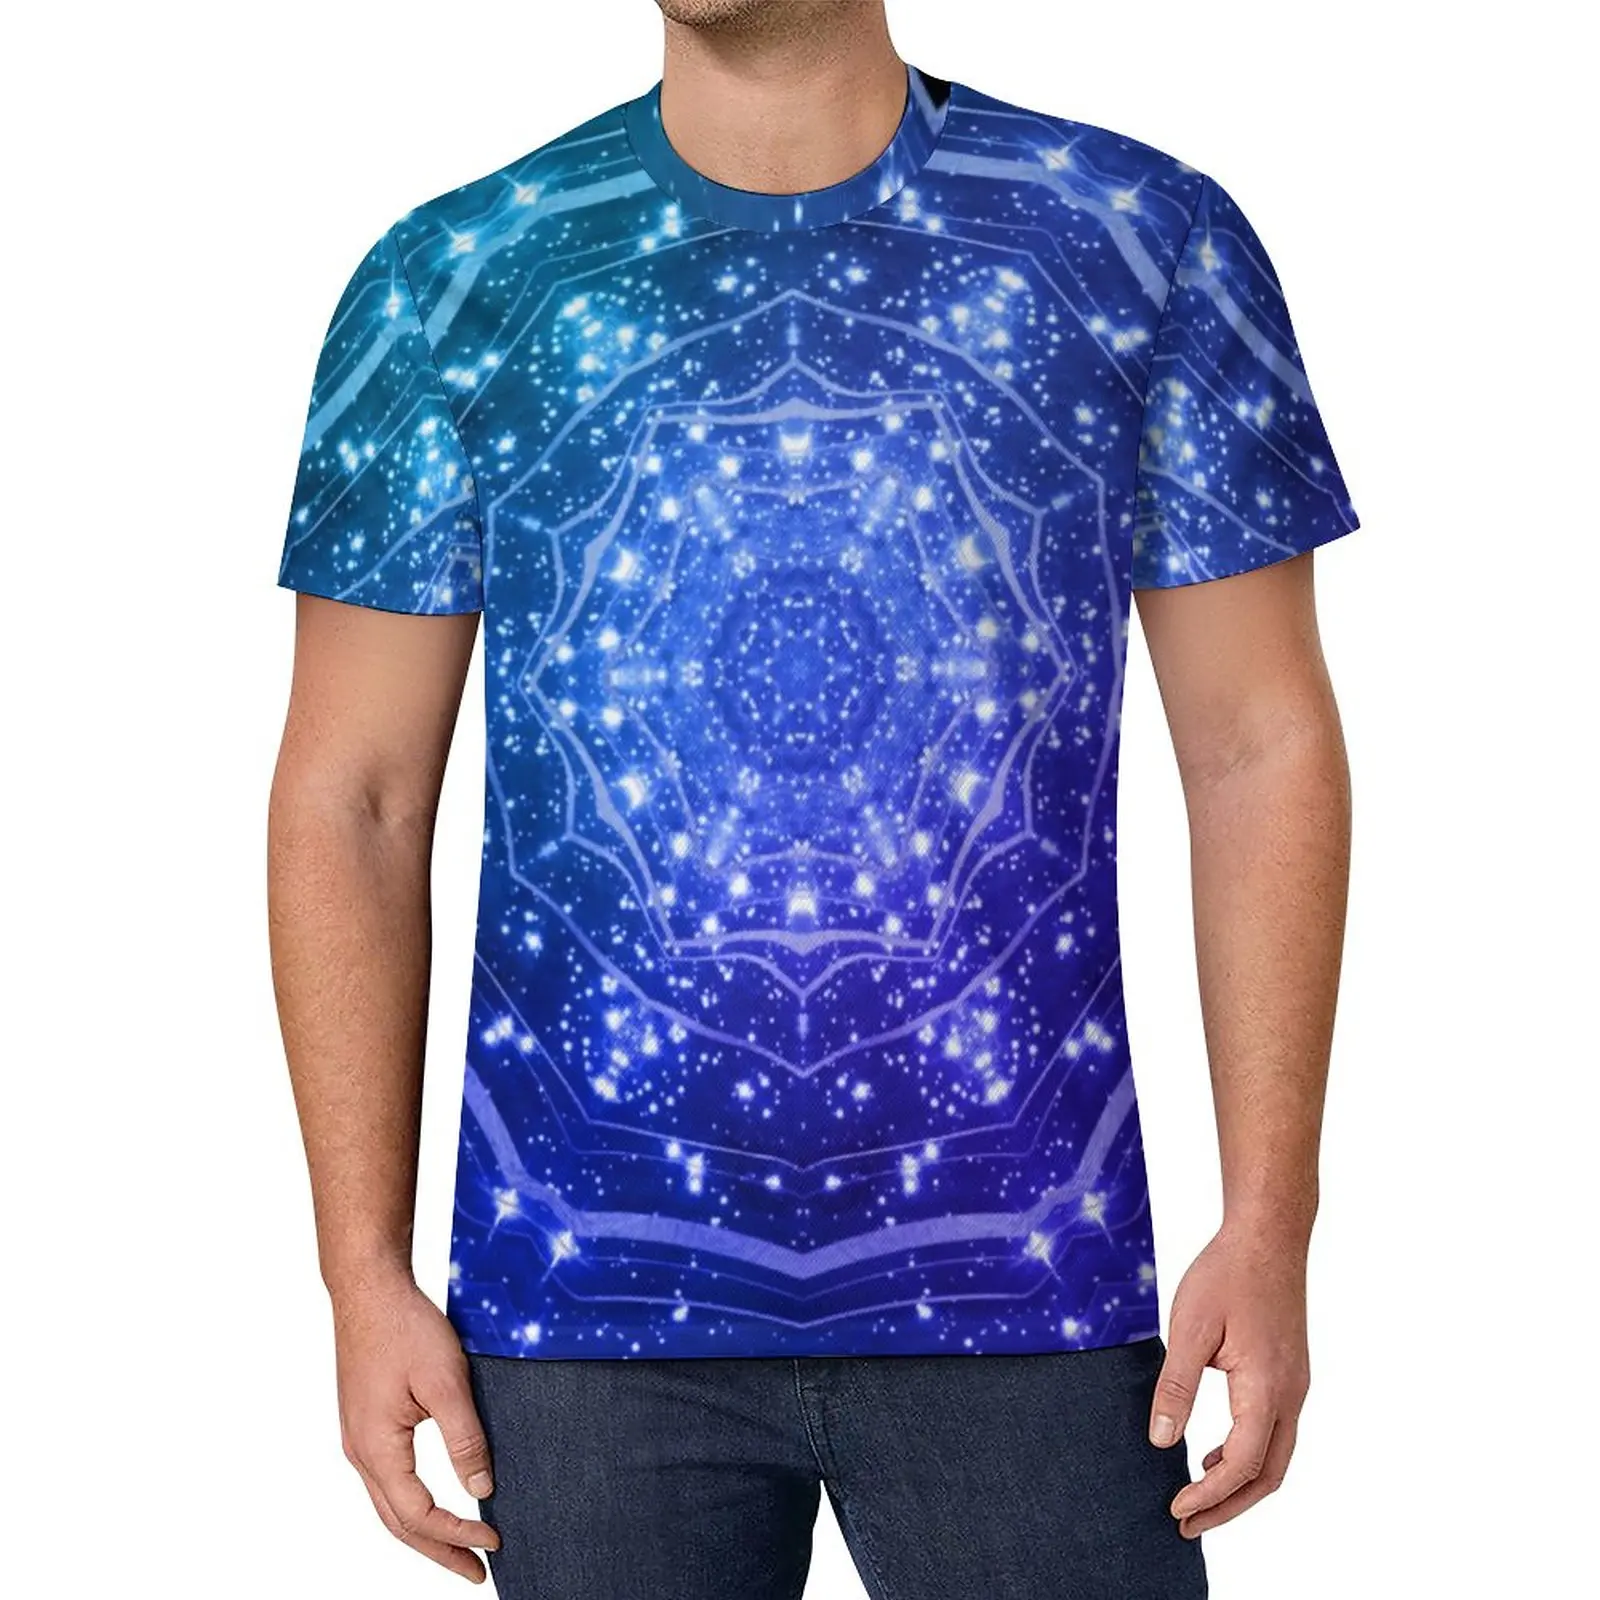 

Фиолетовая футболка с эффектом омбре, ретро футболки с рисунком Галактики, ночного неба, топы с коротким рукавом, уличная одежда, топы оверсайз